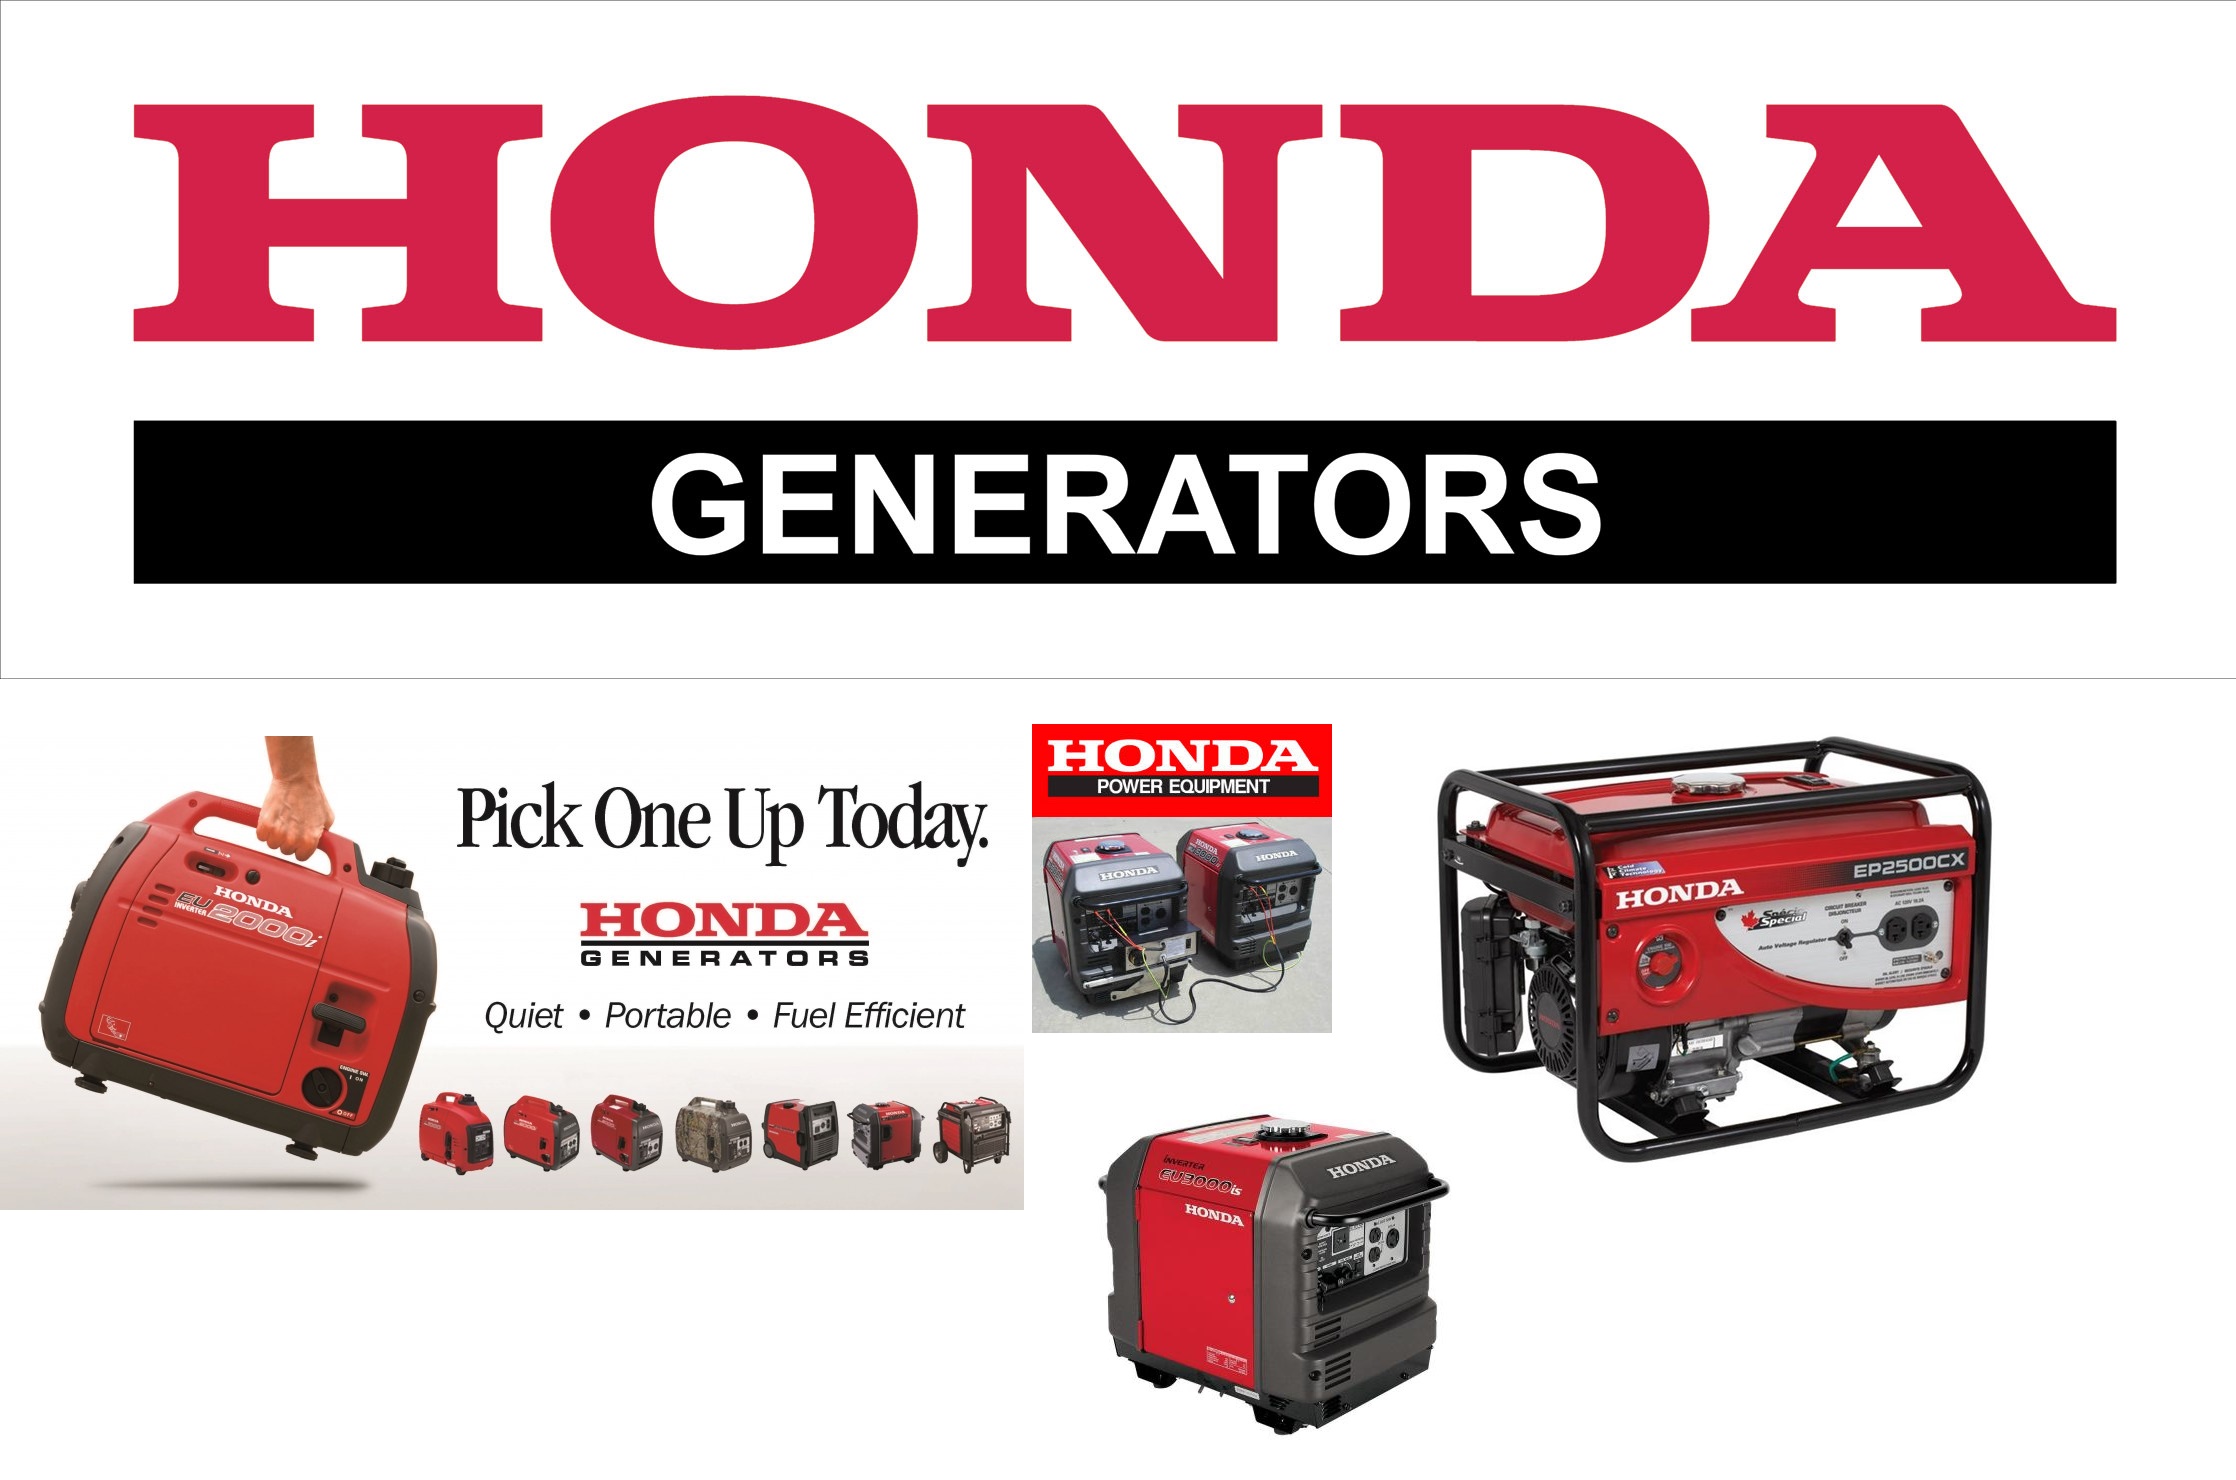 honda-generators-banner-.jpg